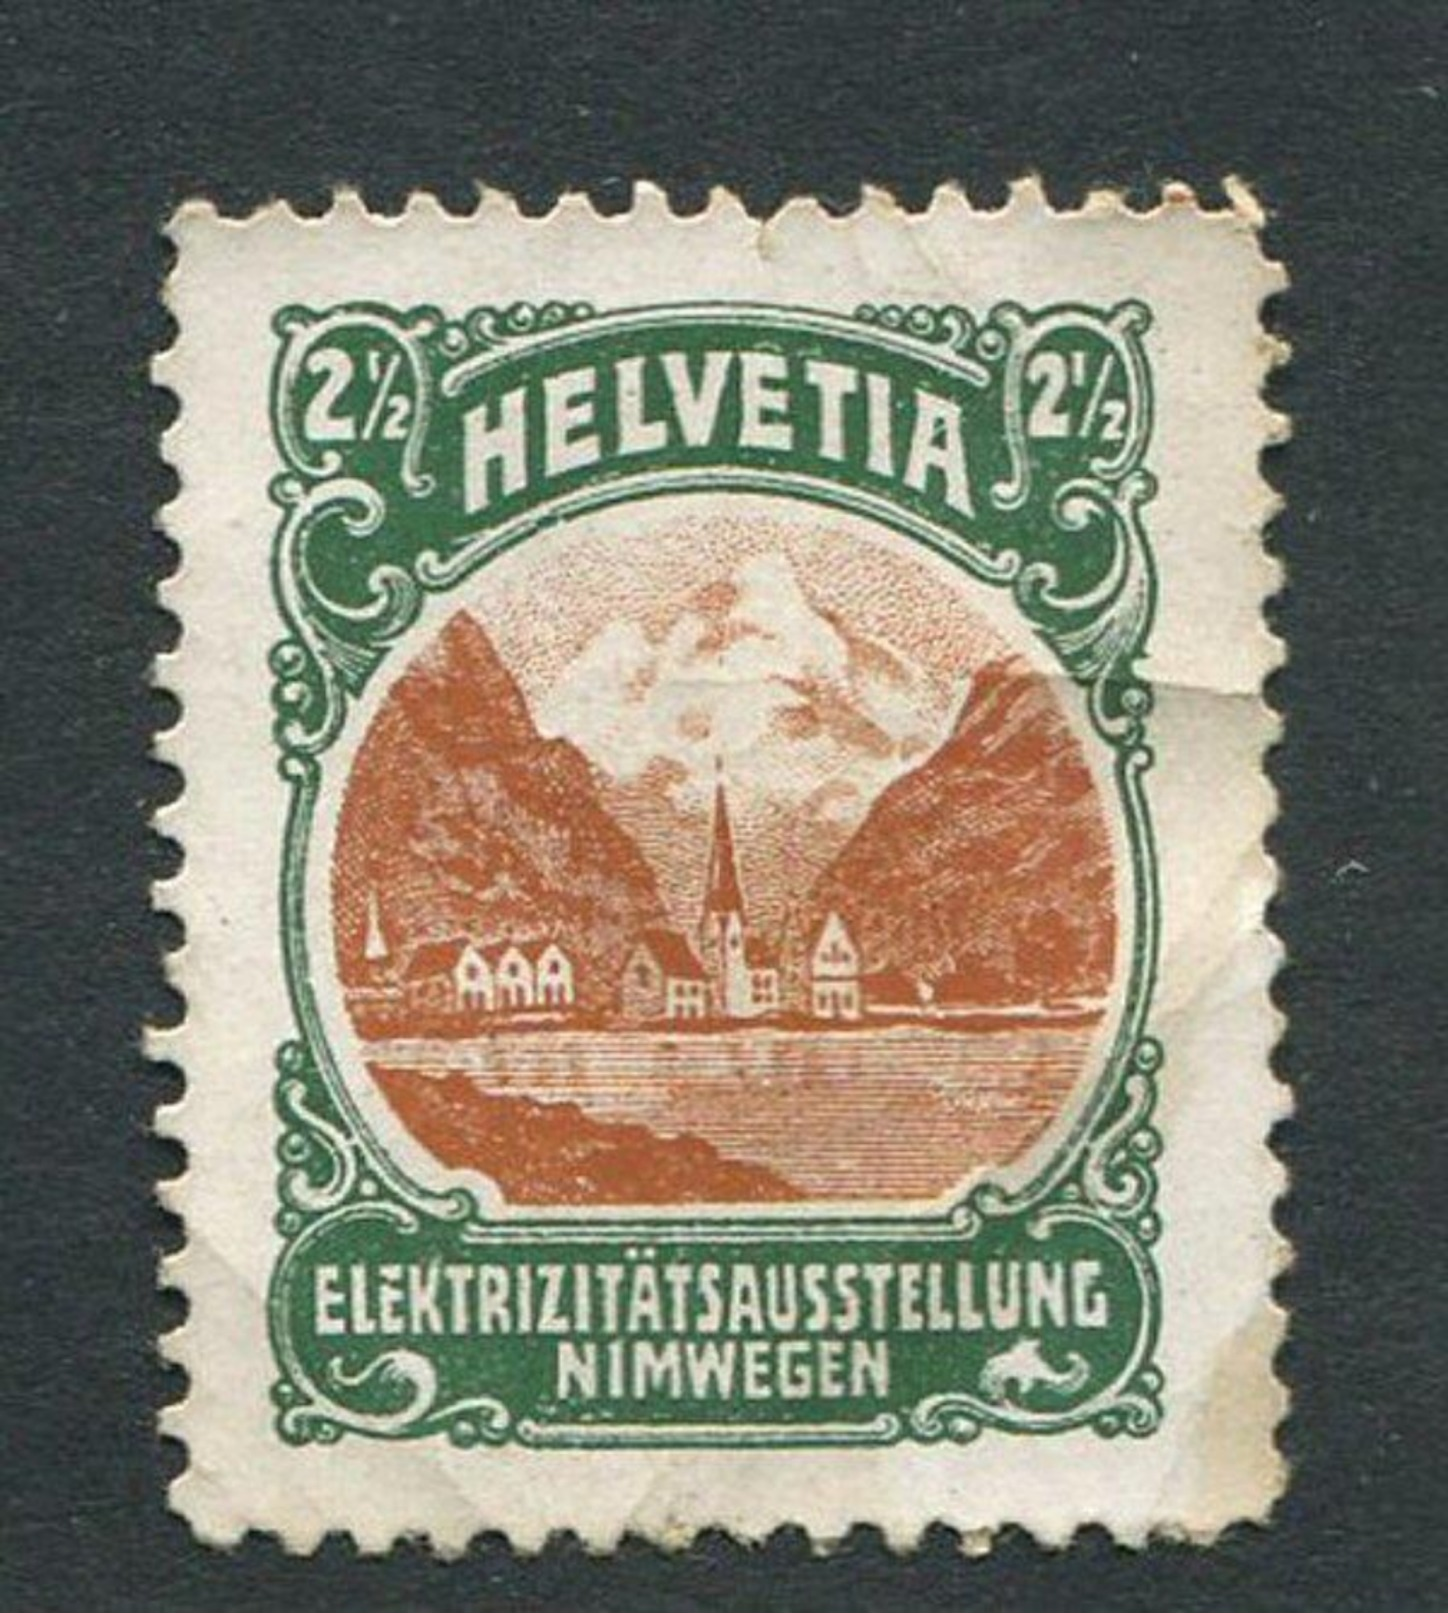 Helvetia Elektrizitatsausstellung Nimwegen Reklamemarke Poster Stamp Vignette No Gum 1 X 1 1/4" - Erinnophilie